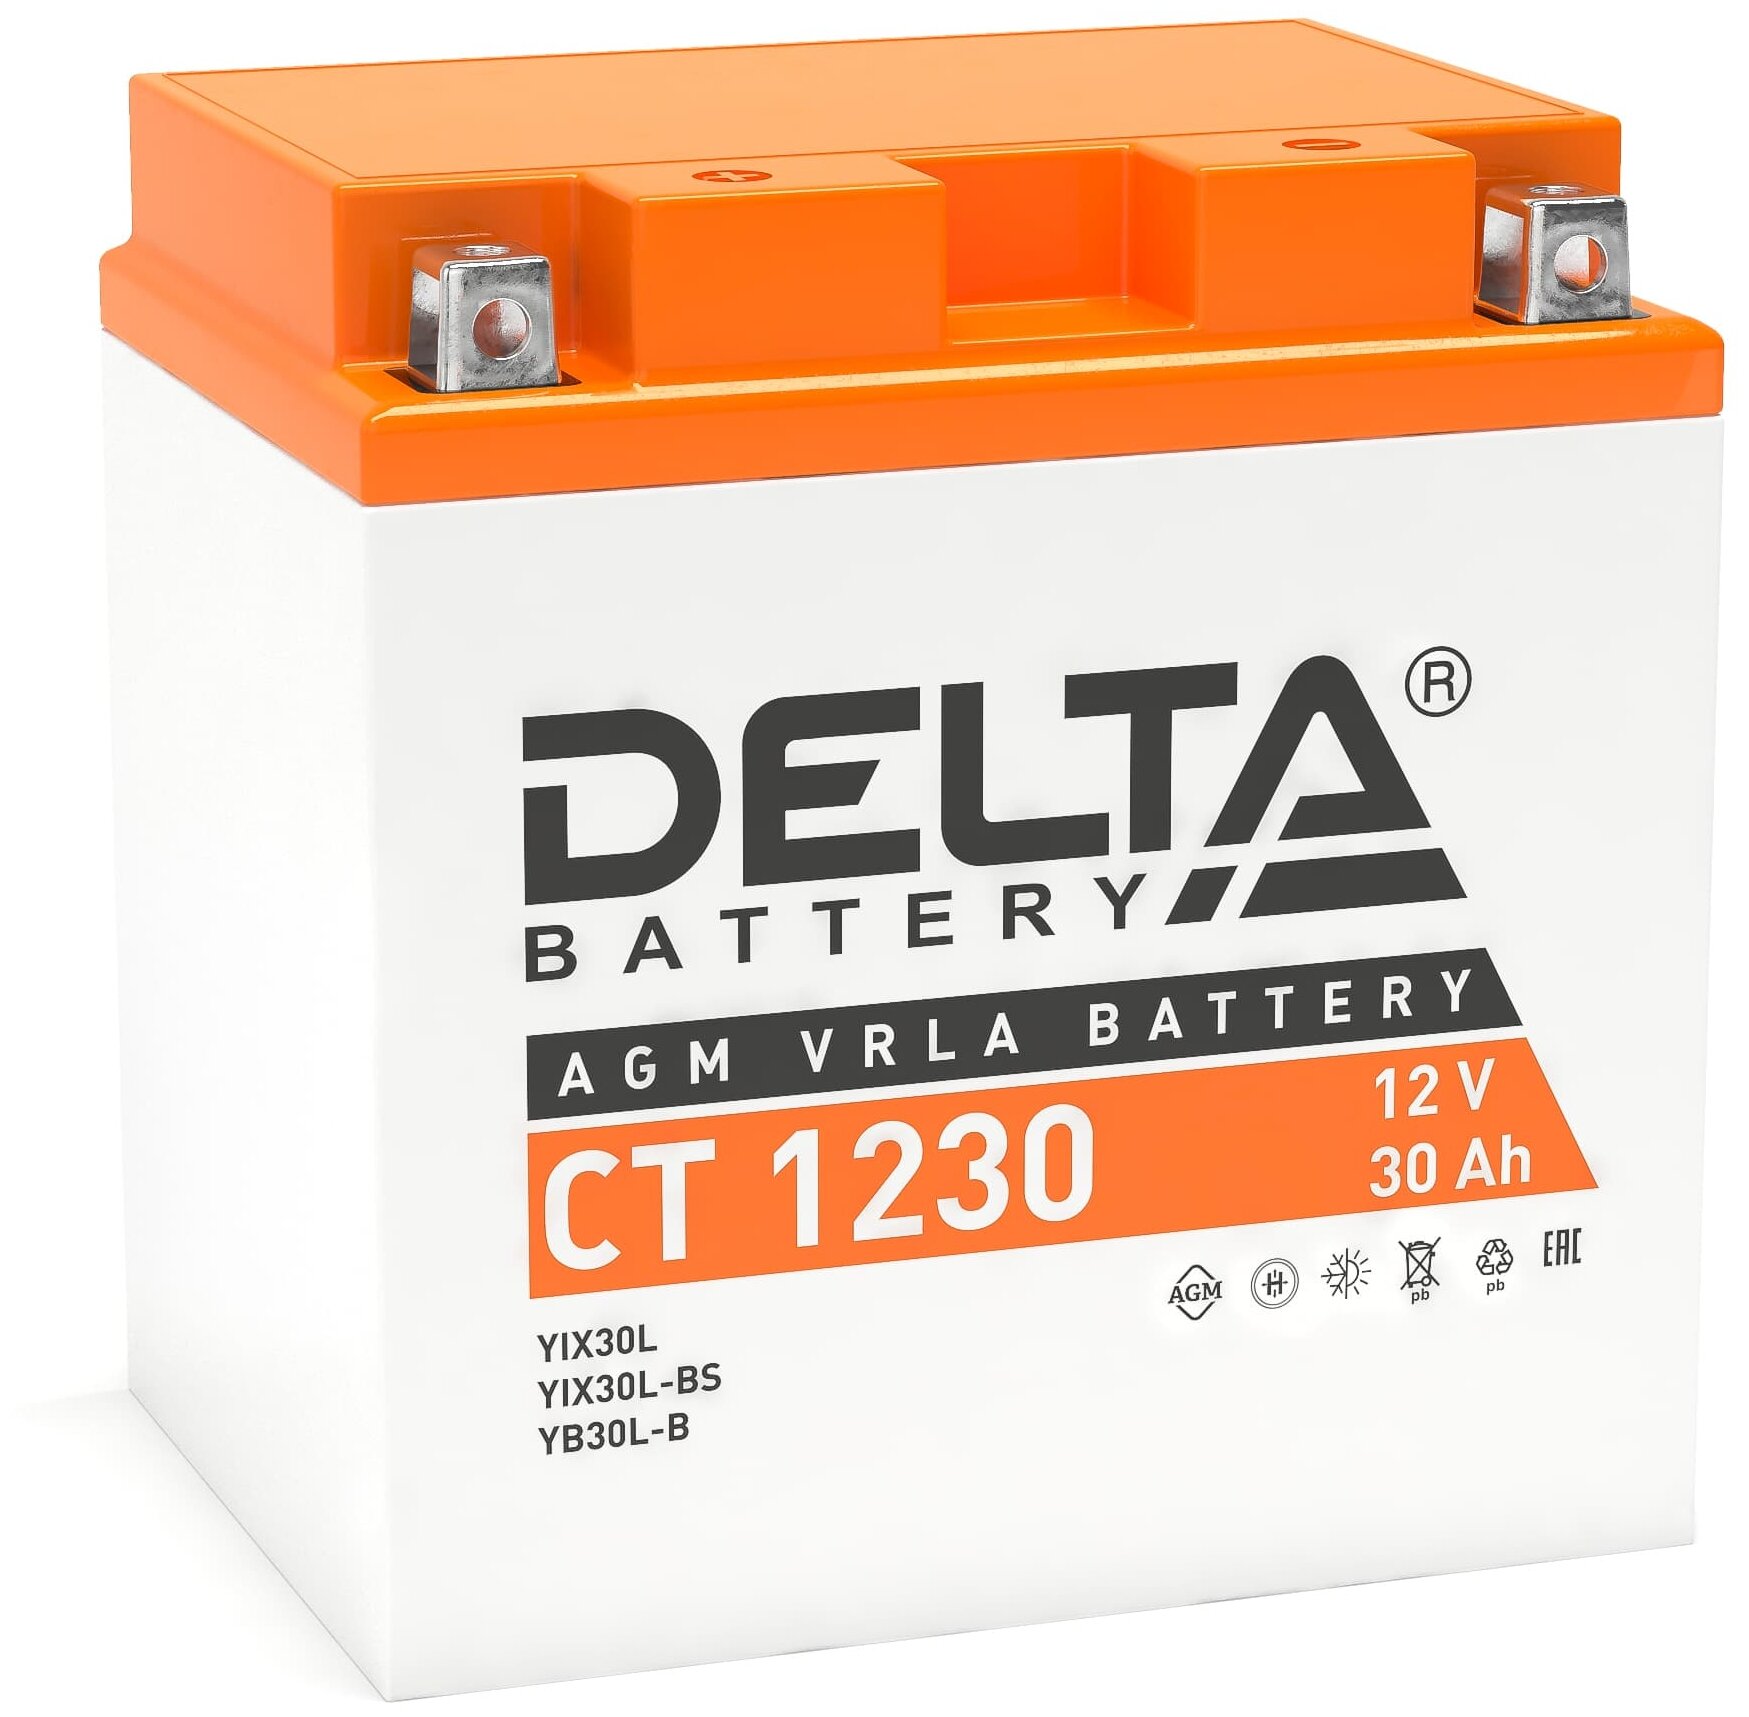 Мото Delta 12в 30ач (Ytx30l, Yтx30l-Bs, Yb30l-B) О/П Д*Ш*В 16,8*12,6*17,5 См Арт. Ct 1230 Delta арт. CT1230